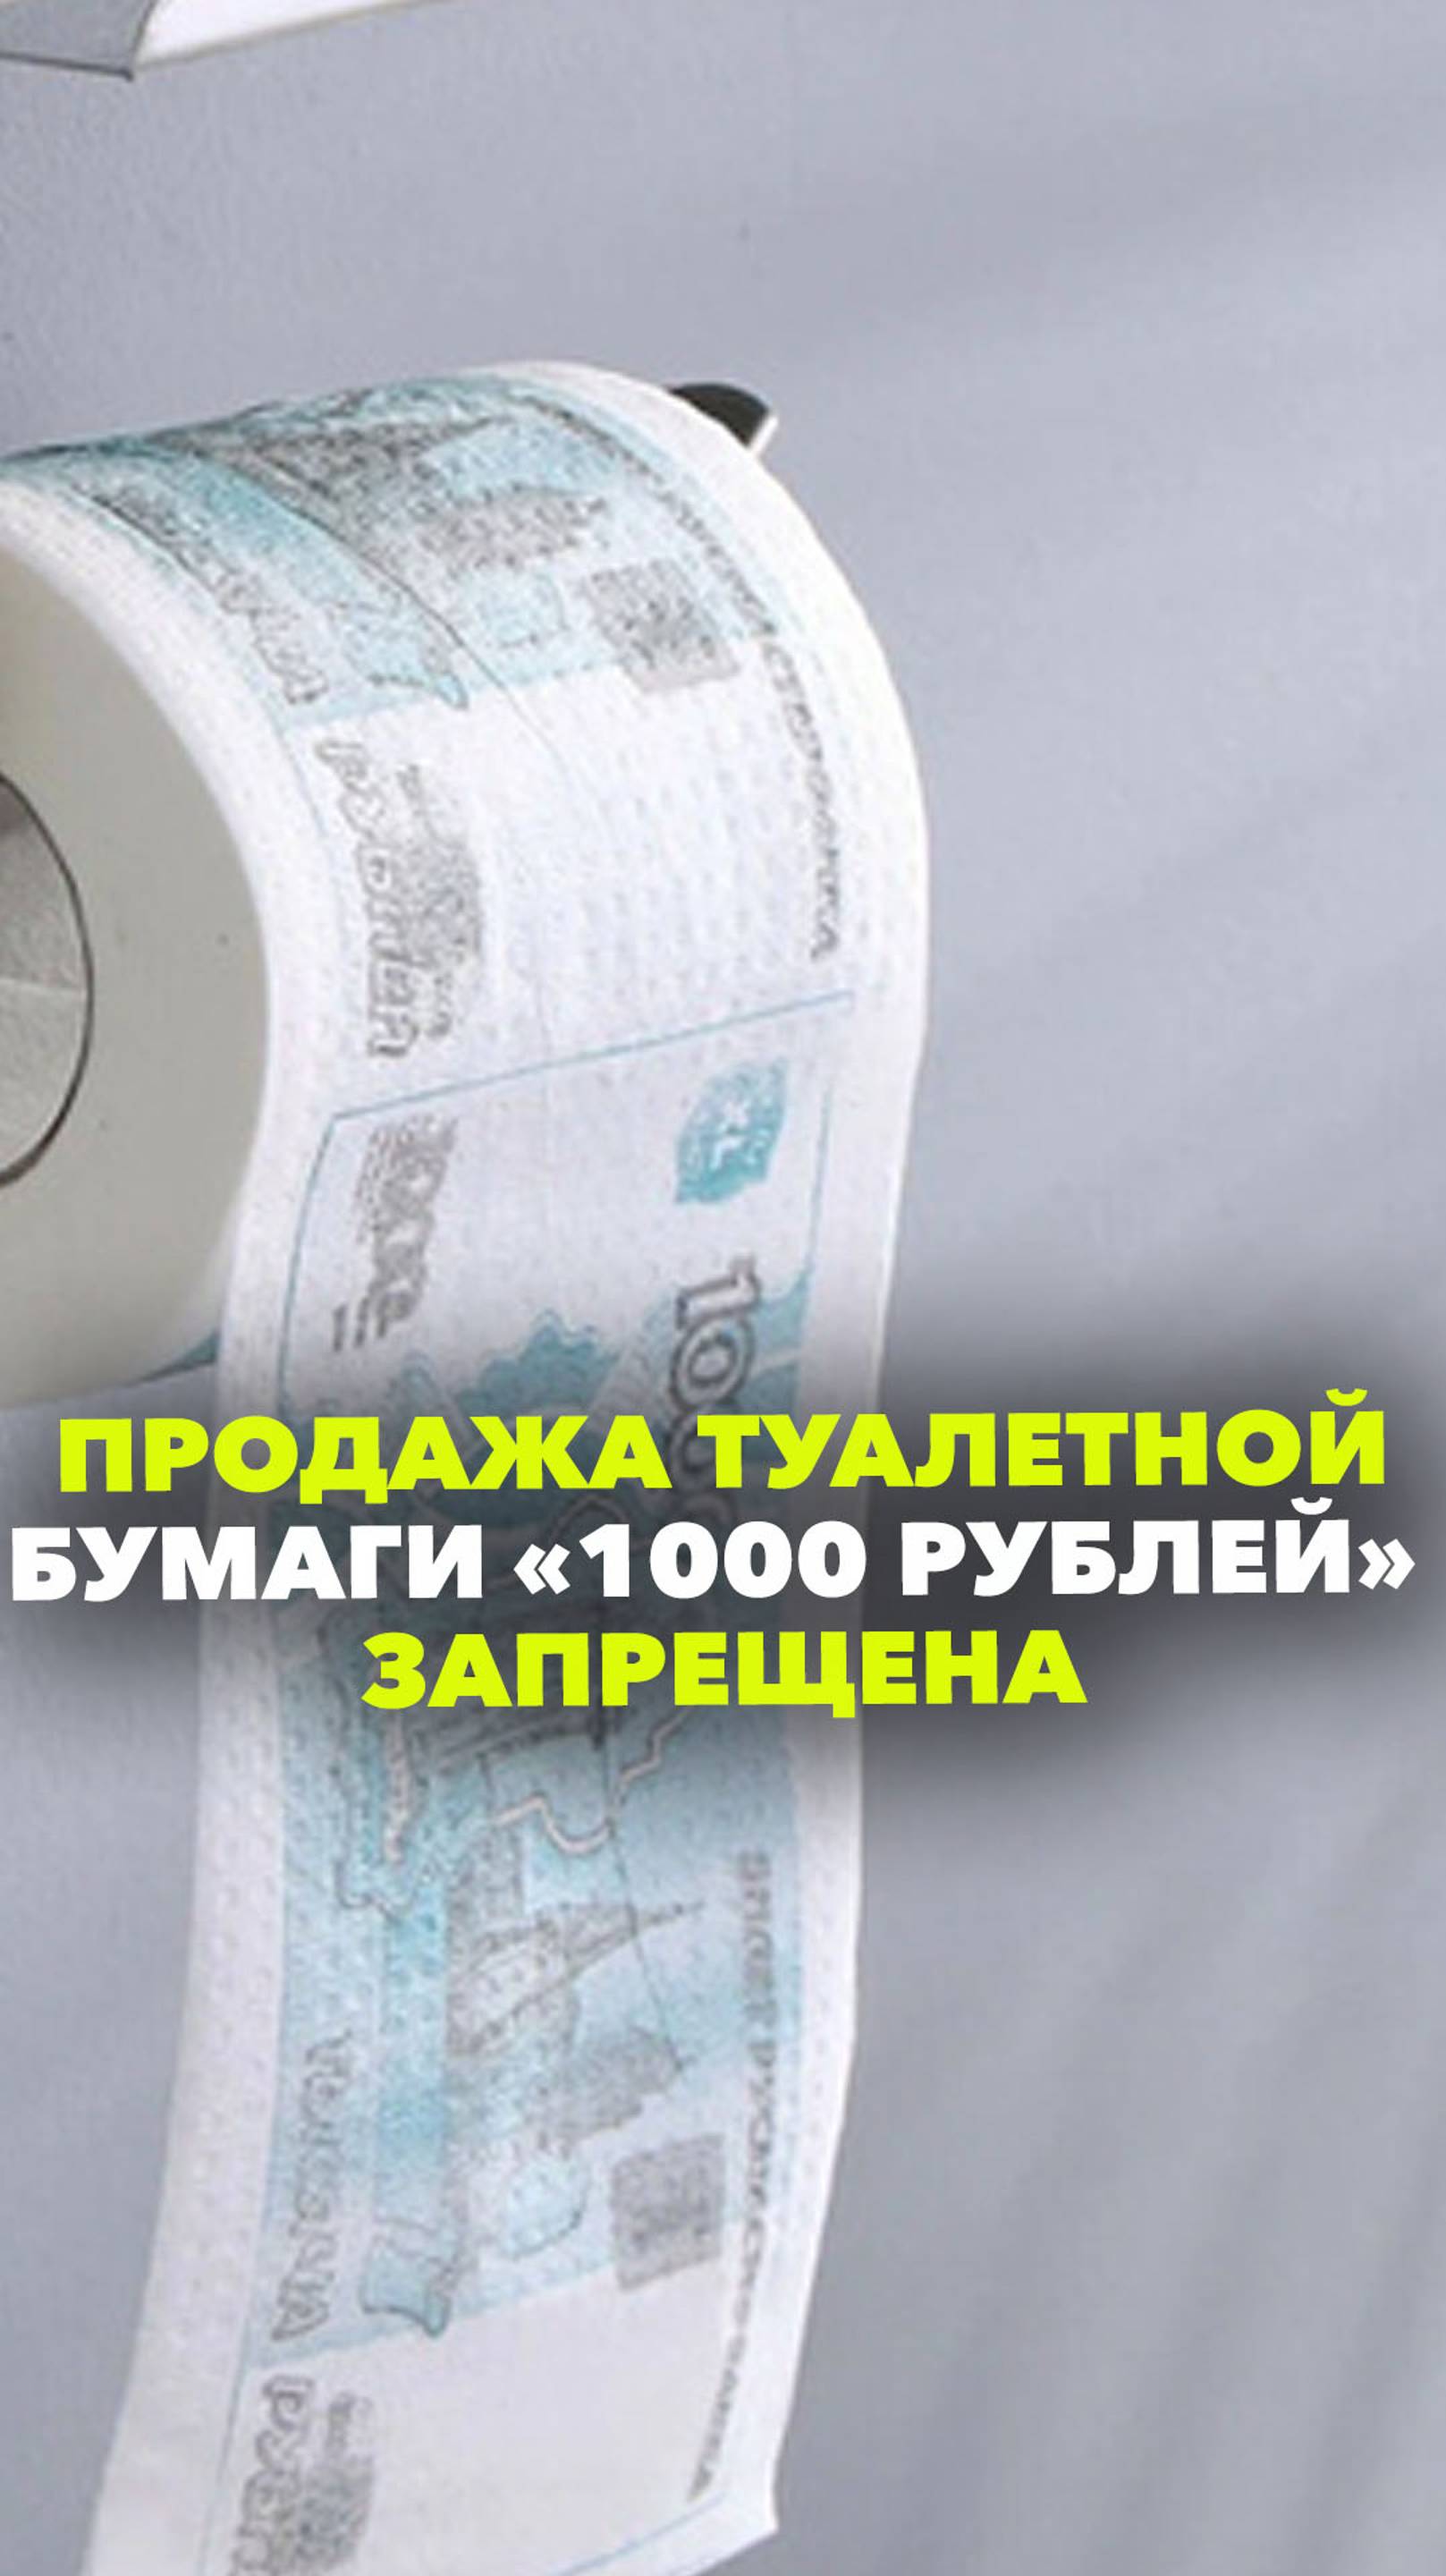 В России запретили использование туалетной бумаги с изображением 1000 рублевой купюры